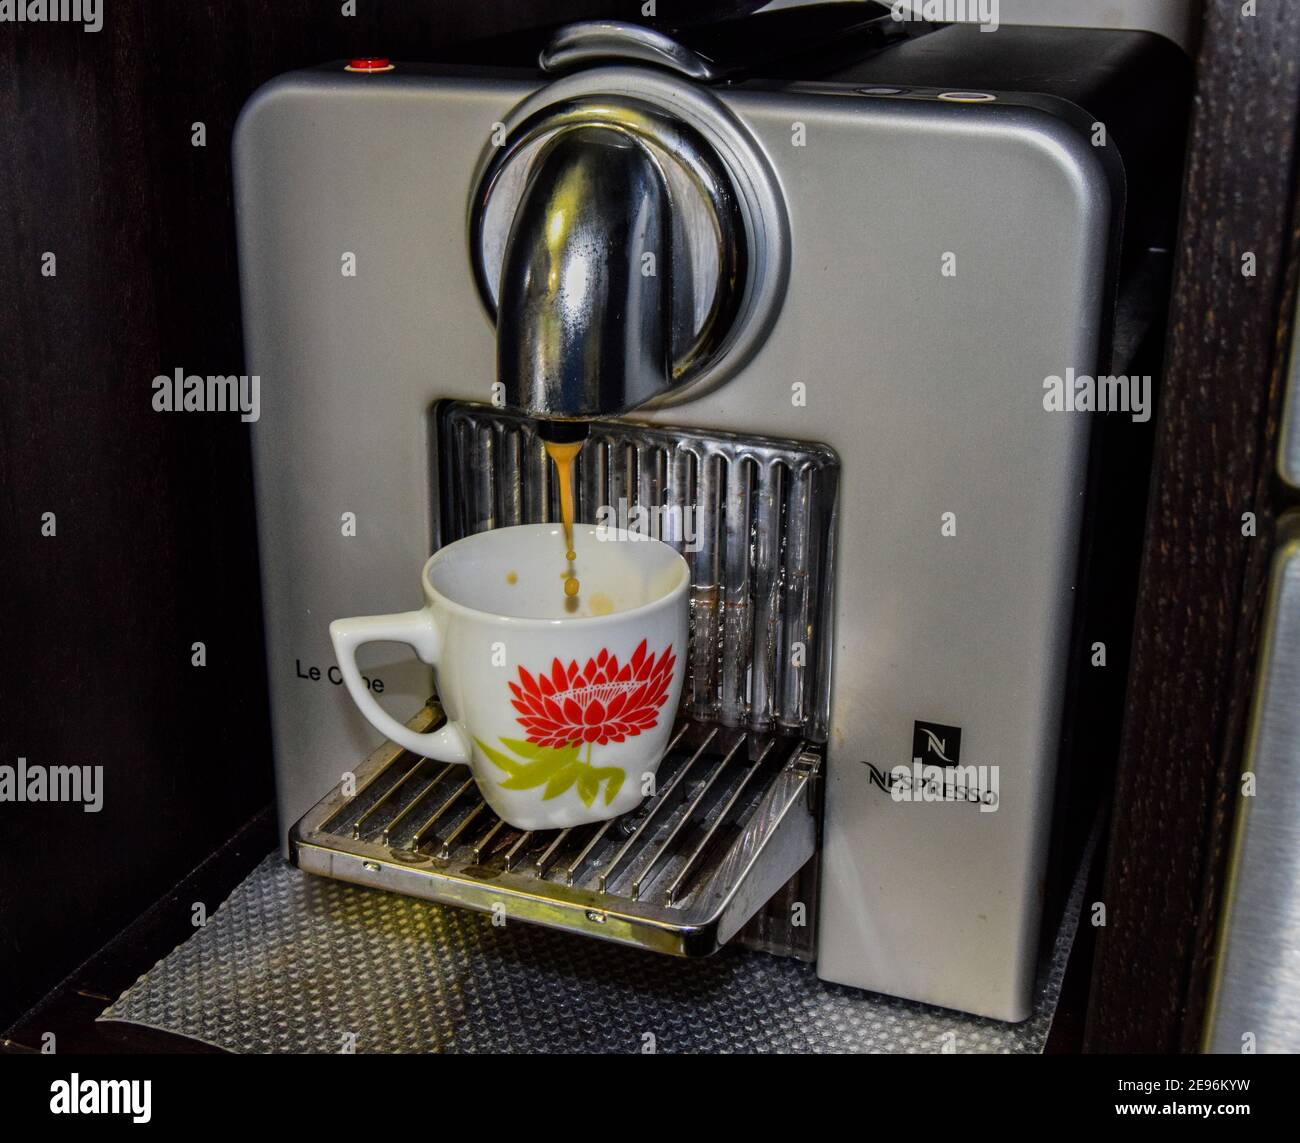 Machine à café Nespresso le Cube, machine à café à capsule et tasse à café.  Petit déjeuner ou déjeuner Photo Stock - Alamy